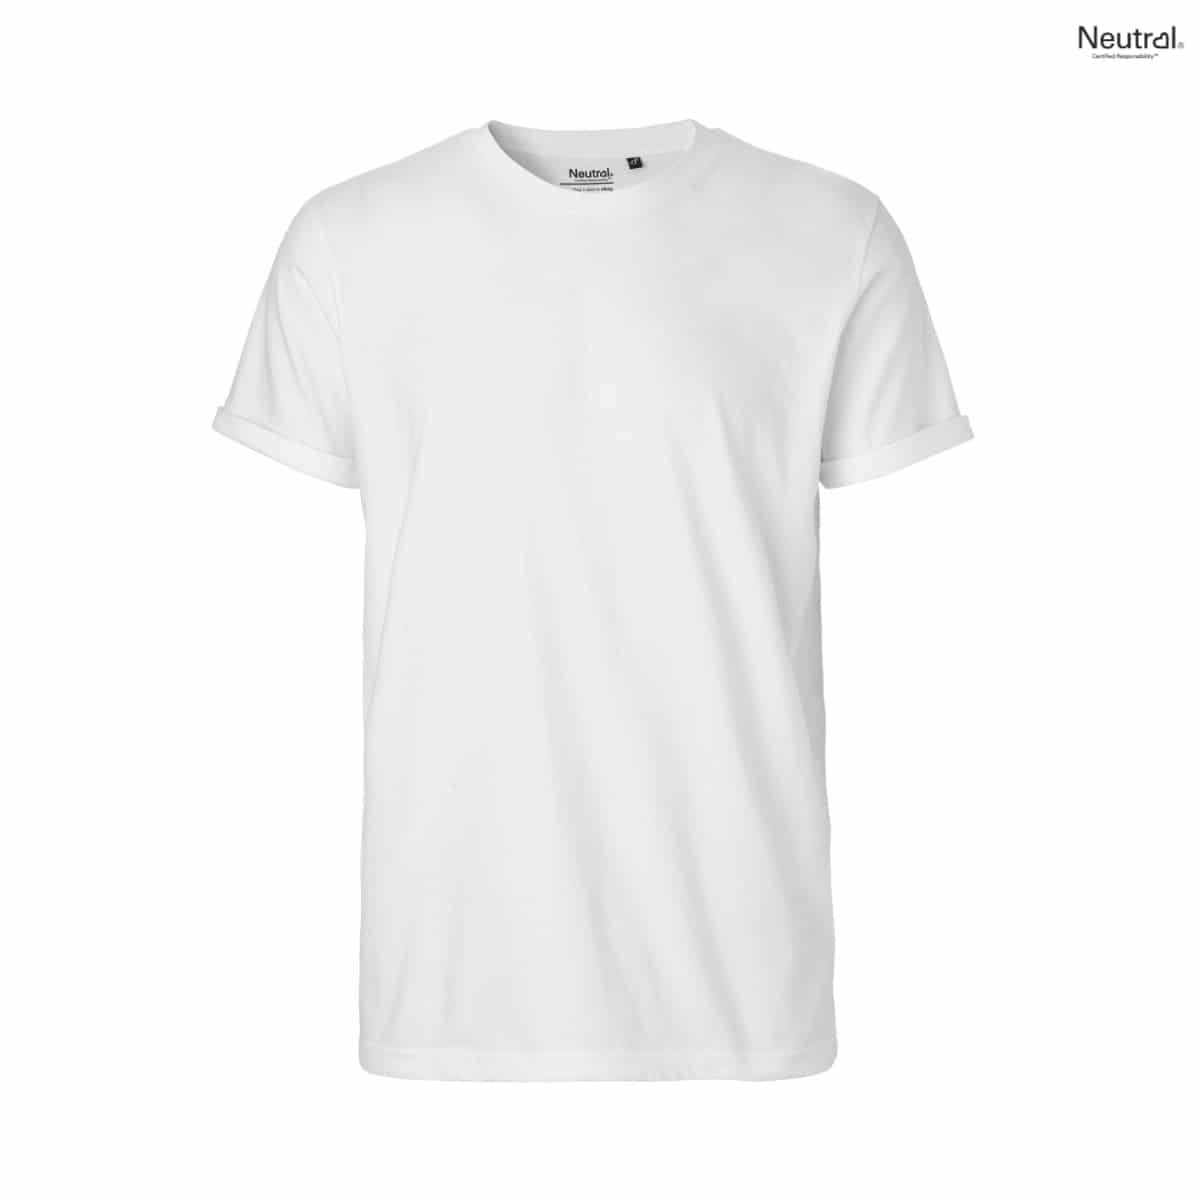 Profil t-shirt med upprullade ärmar av 100% ekologisk Fairtrade bomull